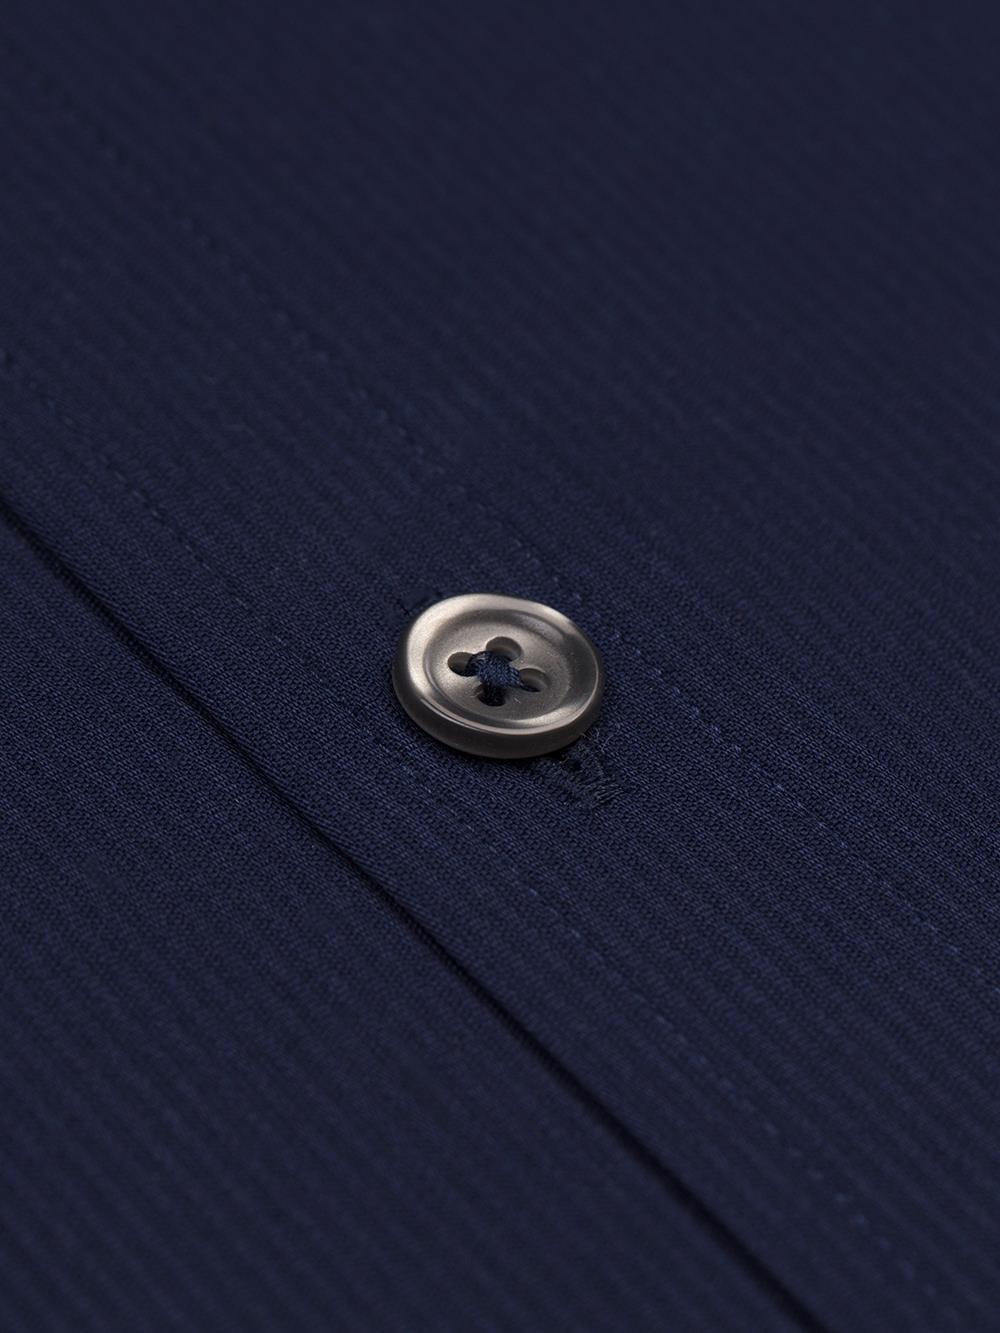 Camisa entallada Vincennes azul marino - Cuello con botones